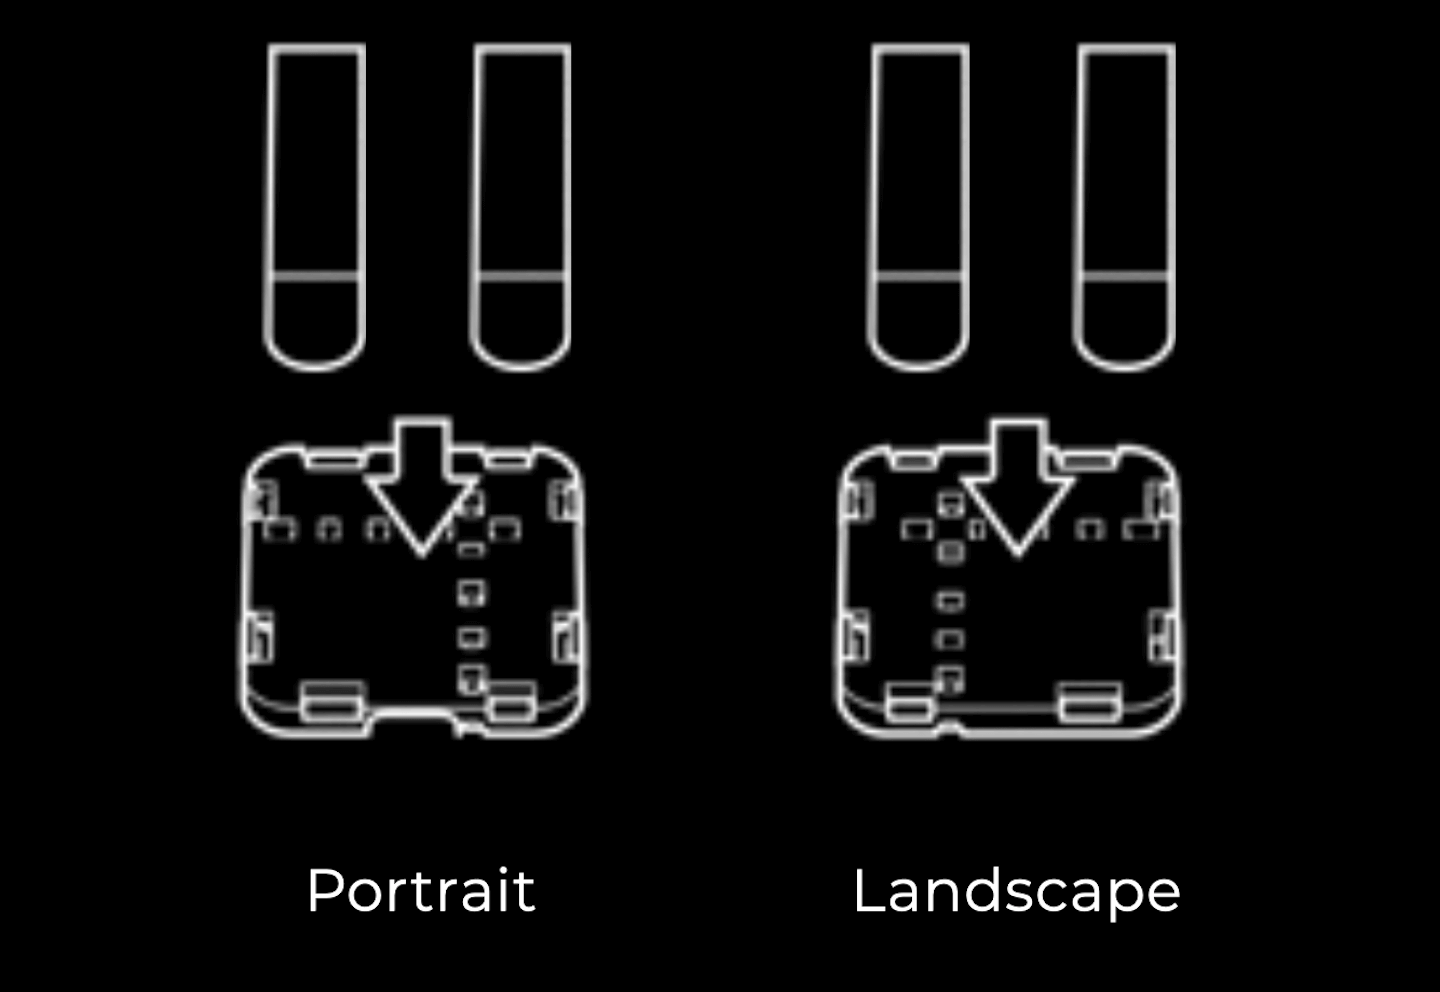 Afbeelding van de connectorplaat van de universele standaard voor tablets met kleefstrippen voor een tablet die horizontaal of verticaal wordt gebruikt.